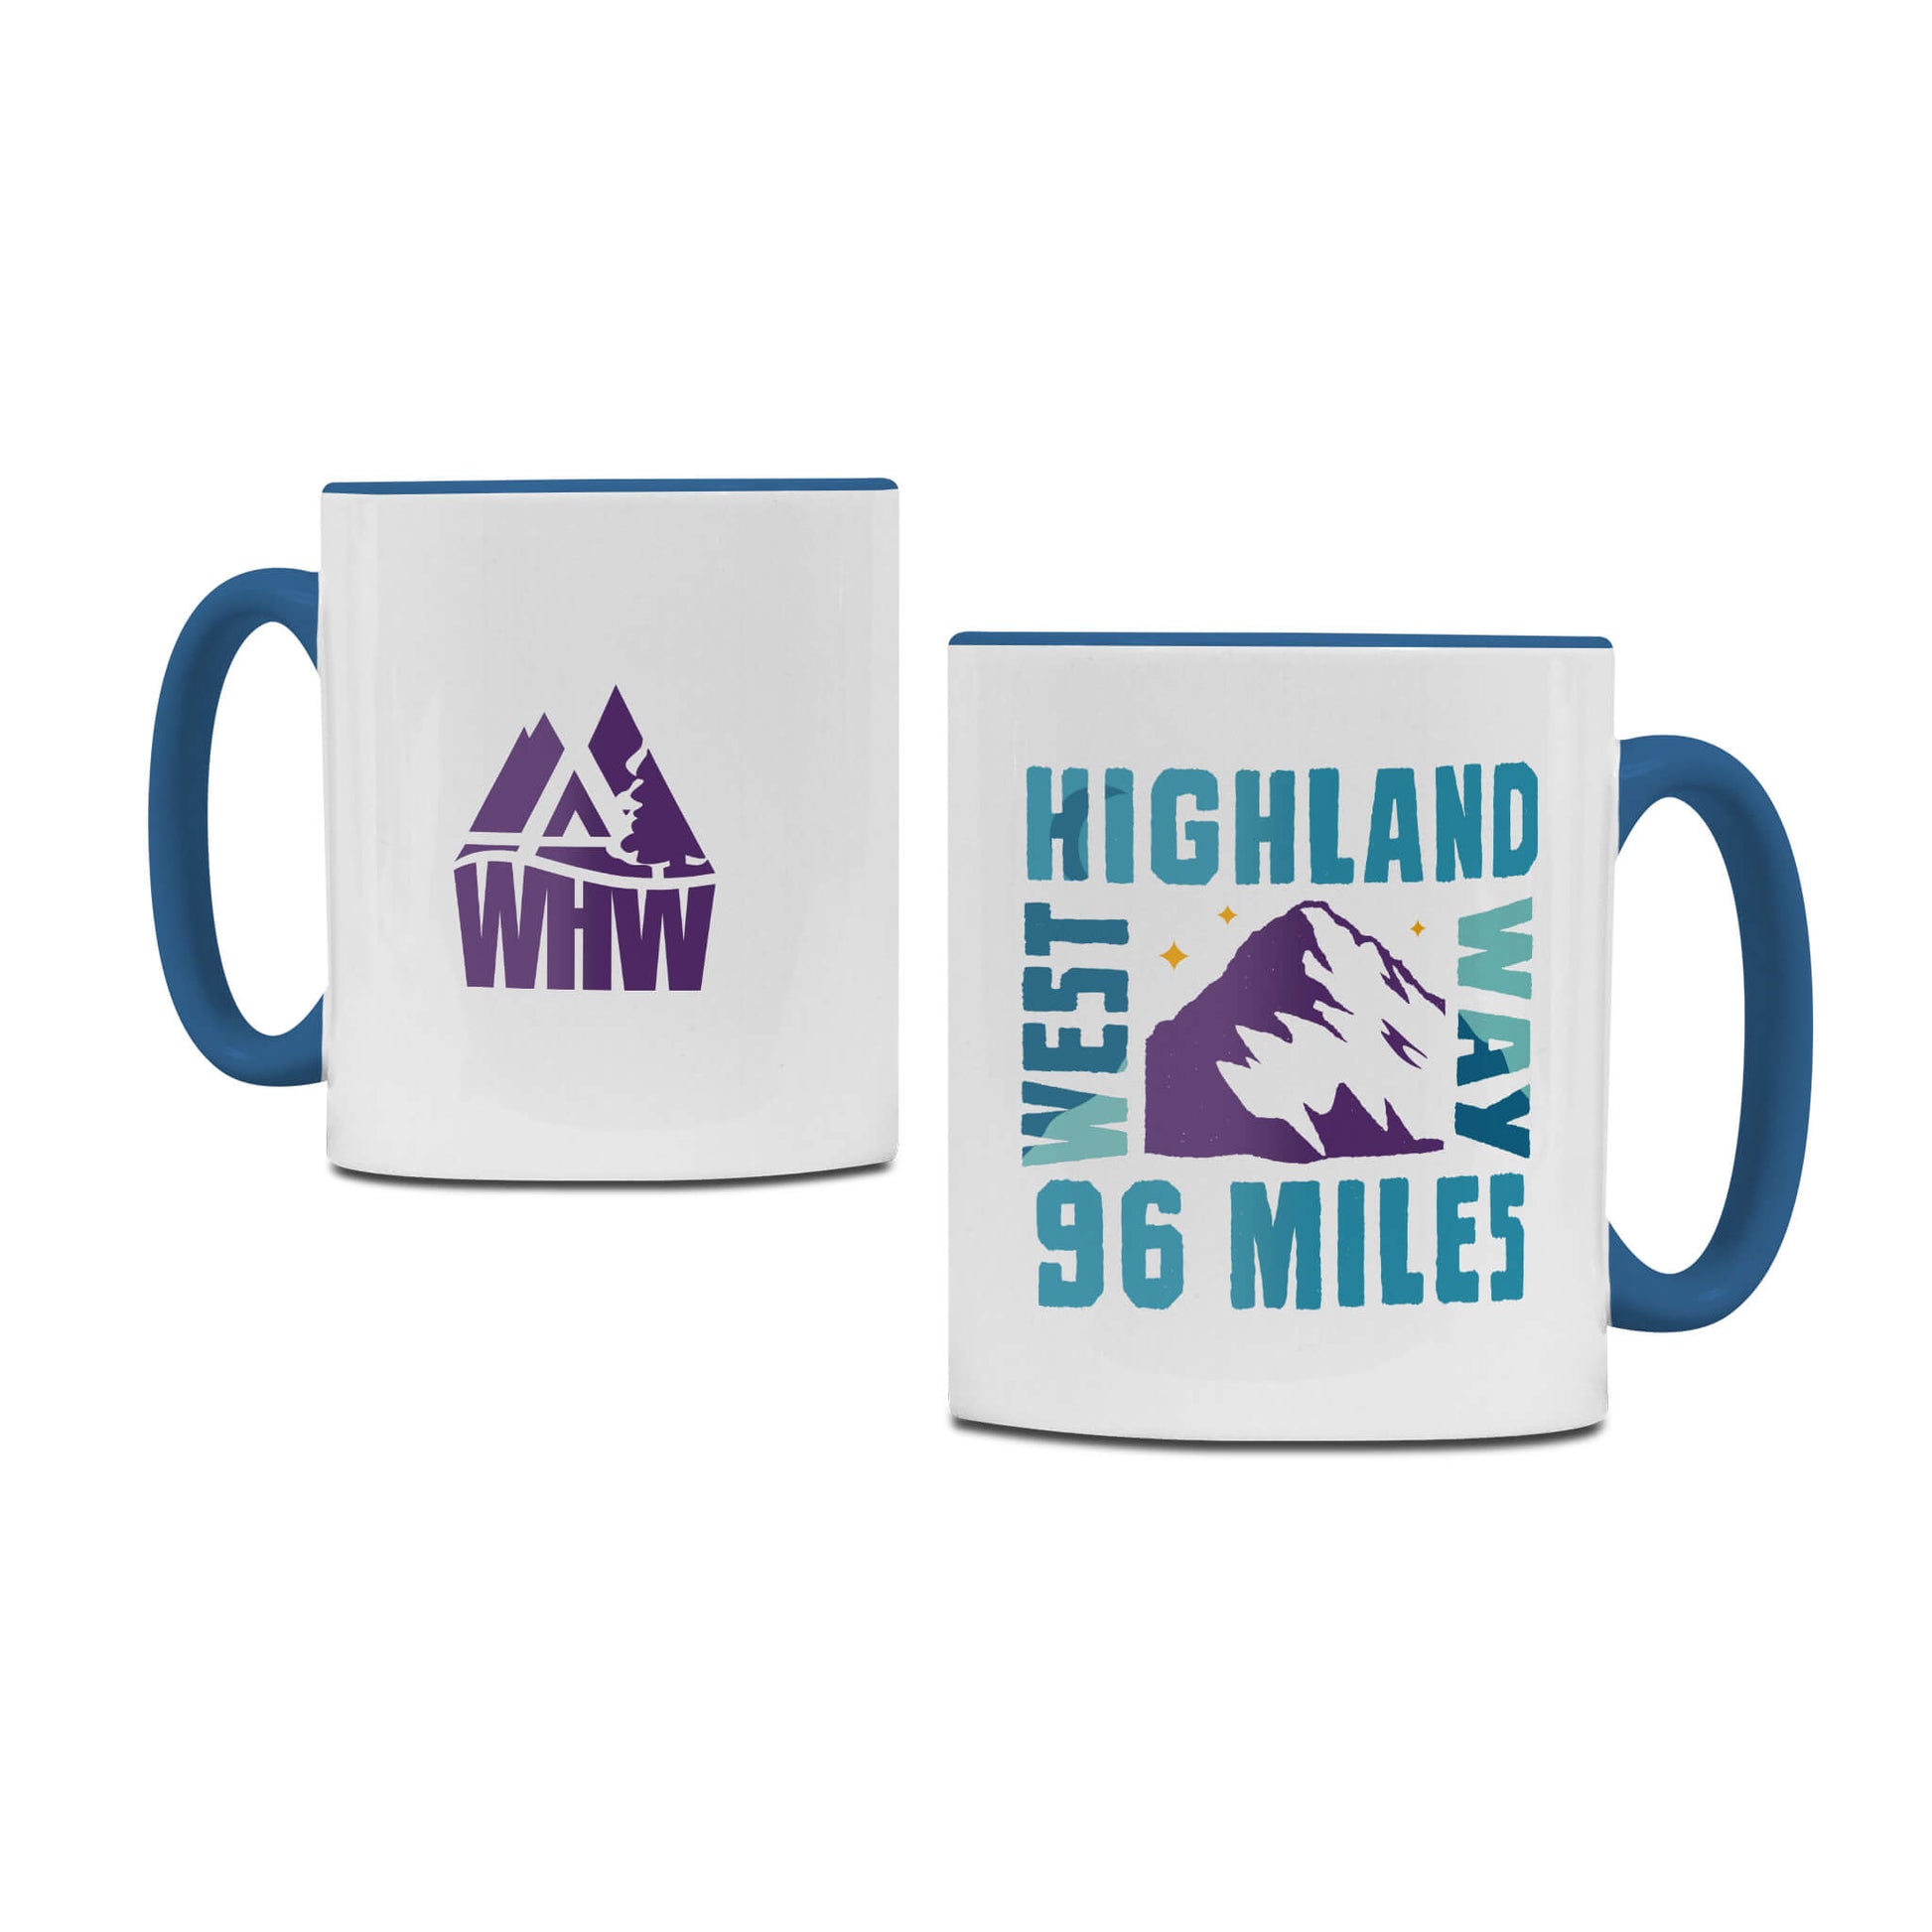 Mountain Ceramic Mug - White/Blue - West Highland Way